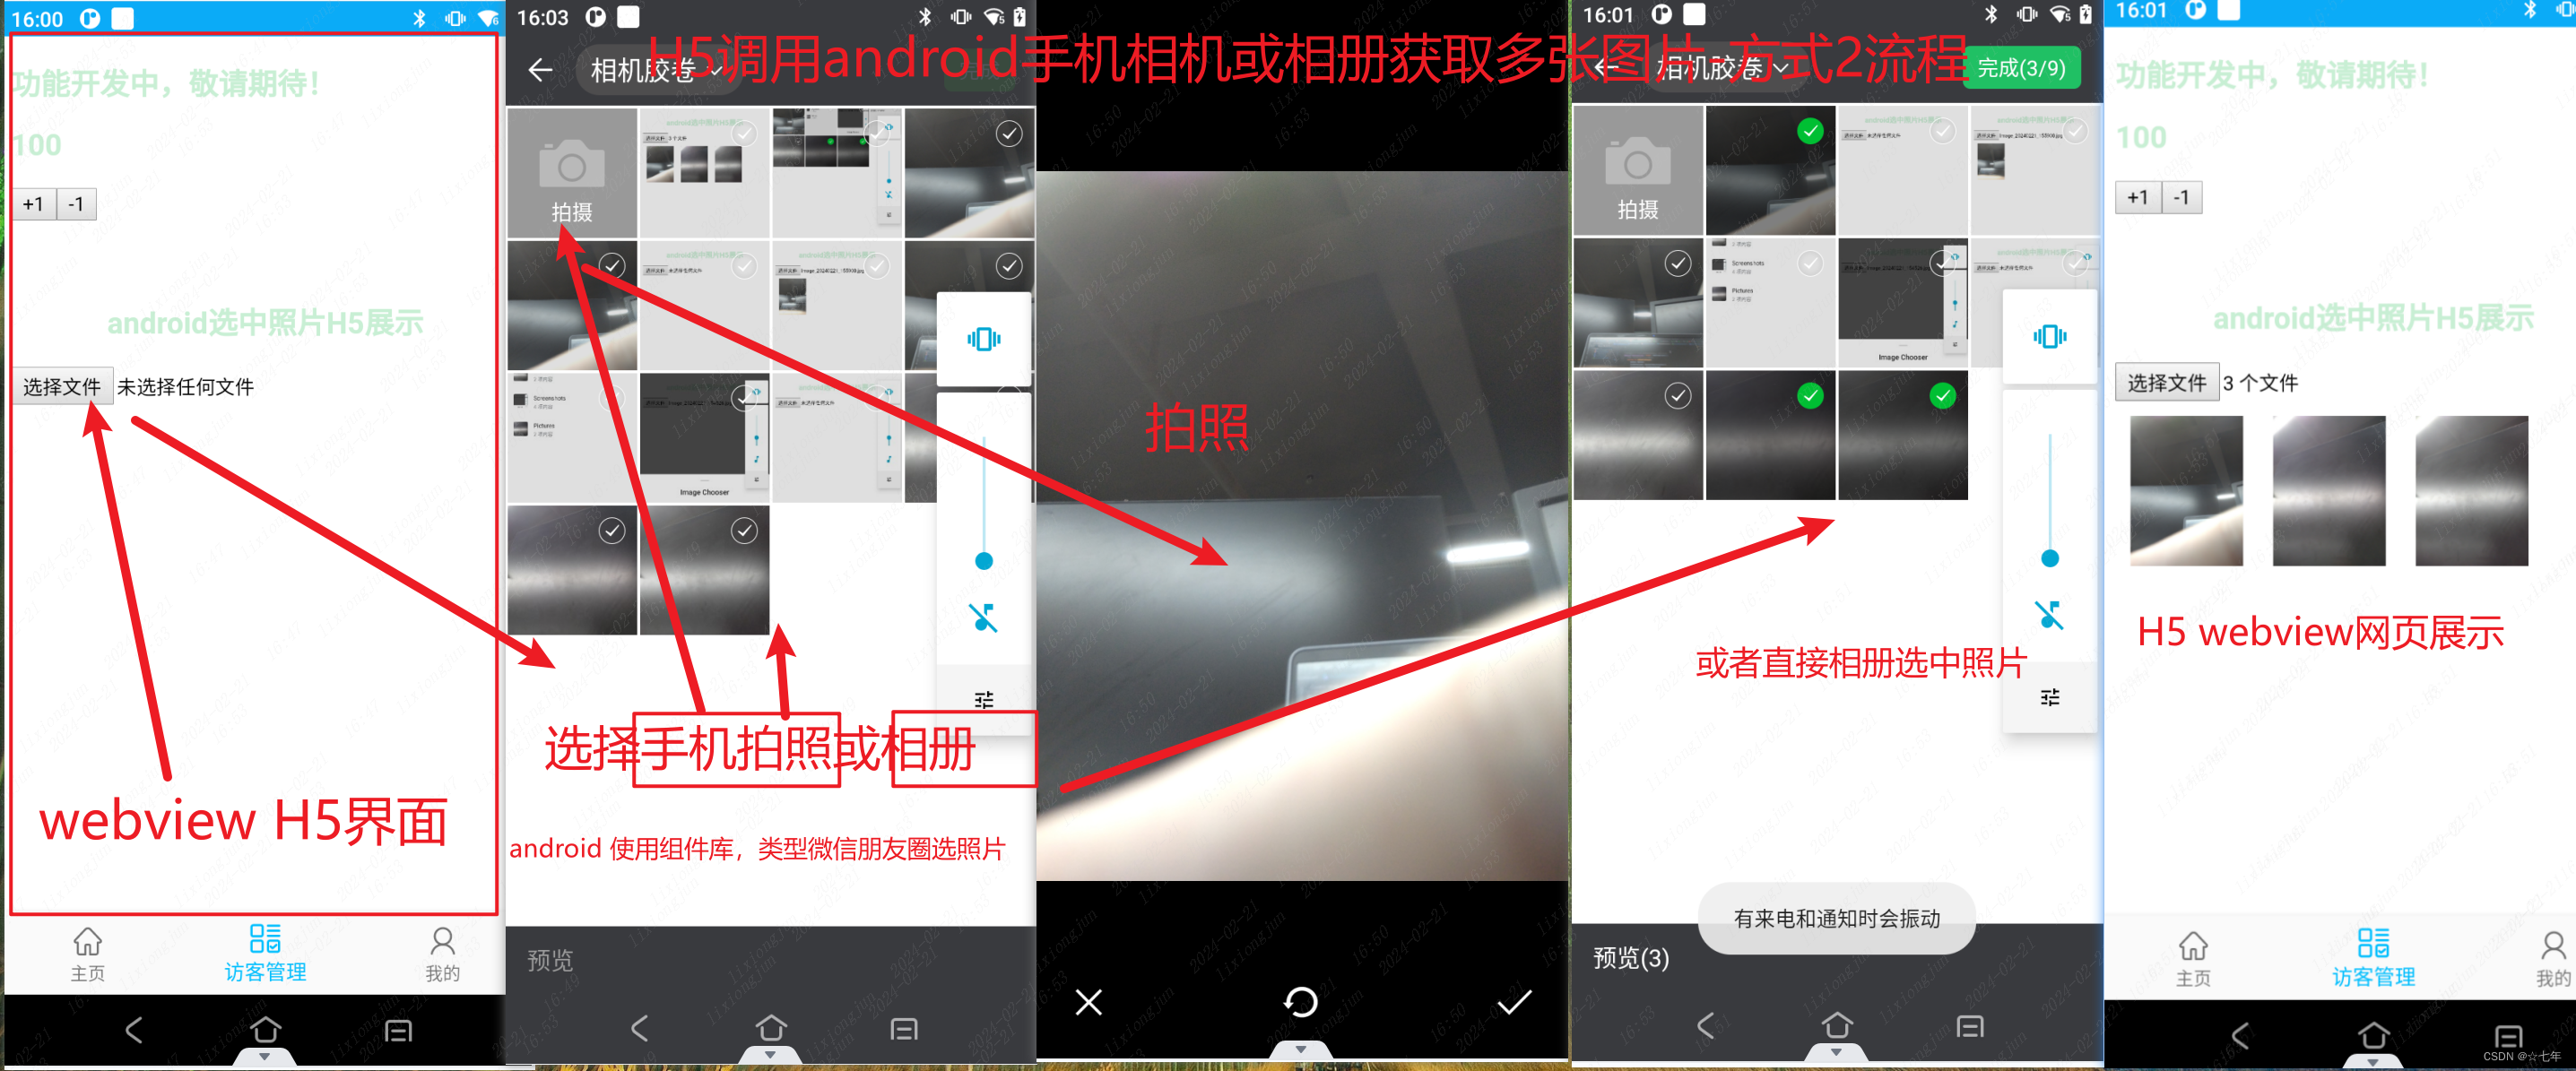 H5获取手机相机或相册图片两种方式-Android通过webview传递多张照片给H5